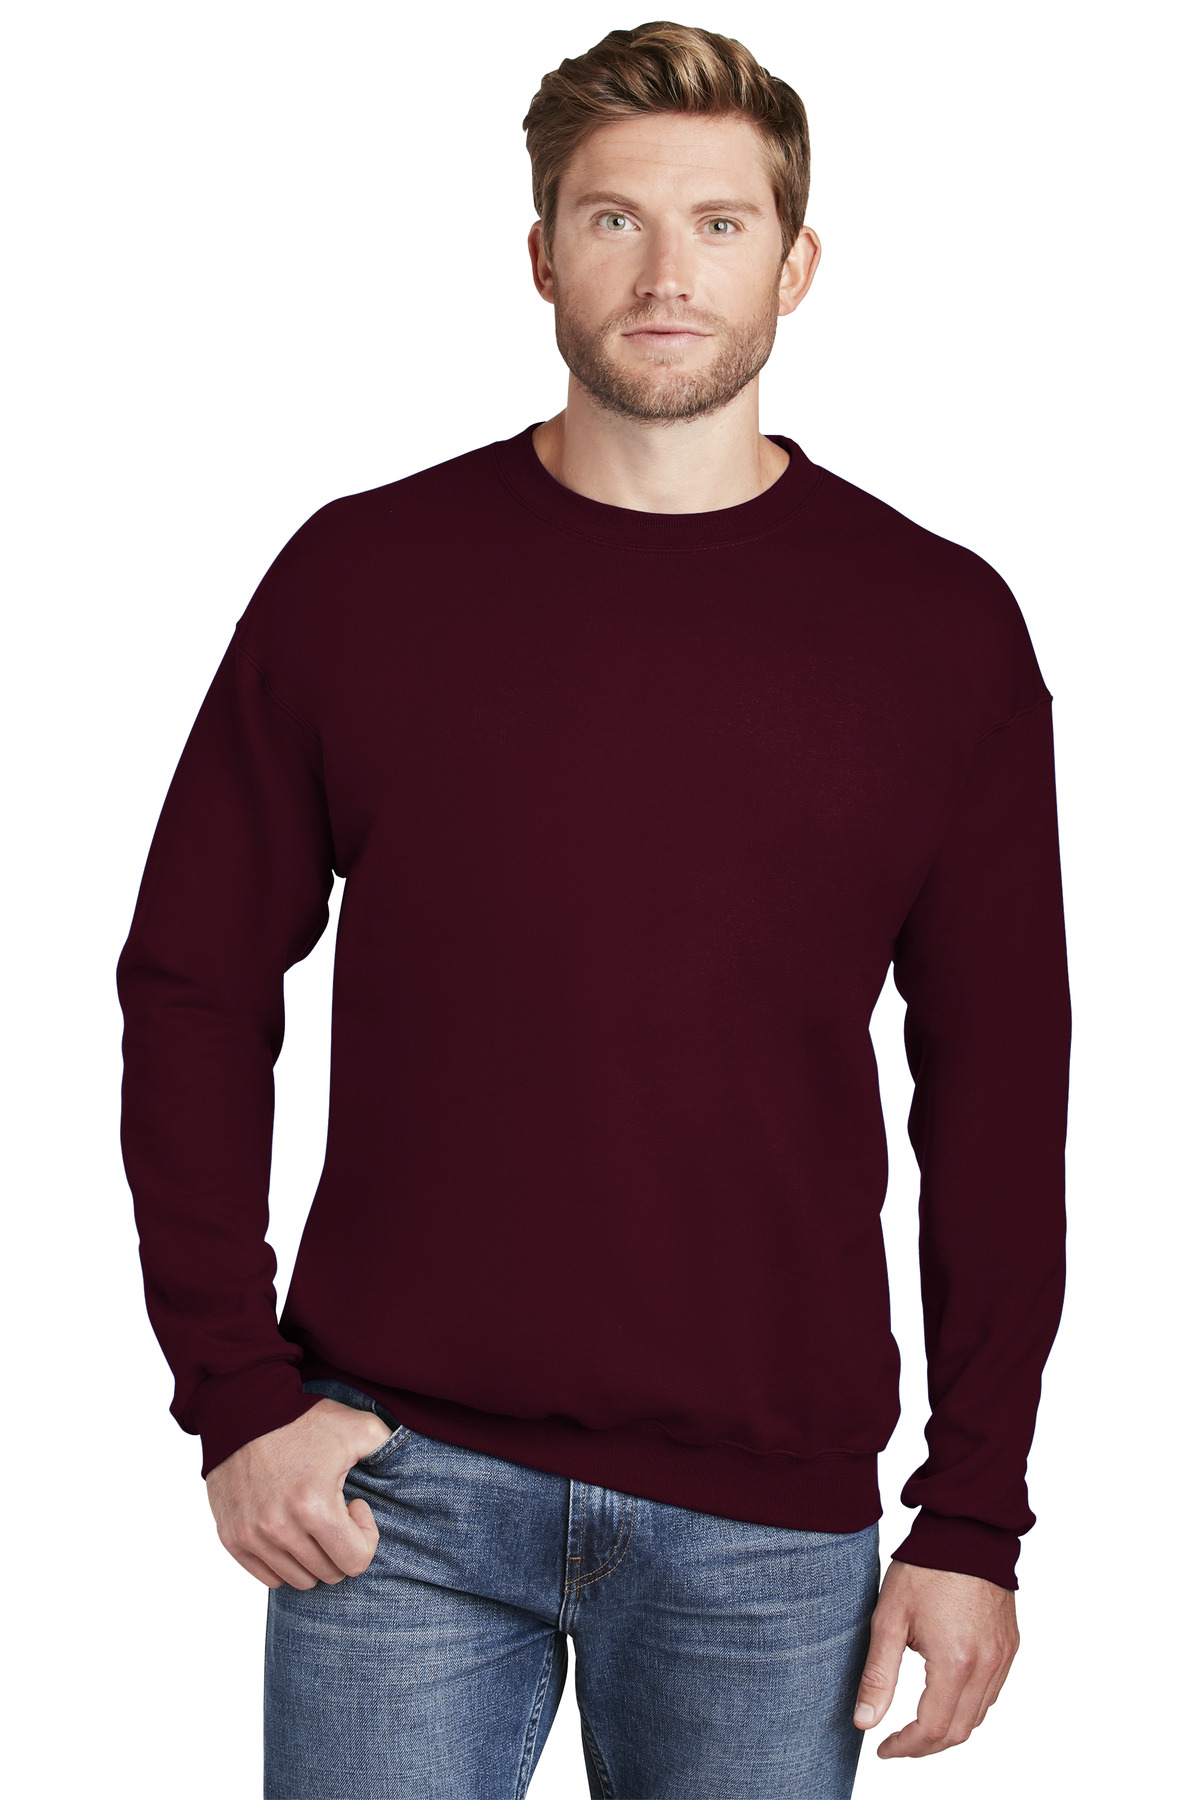 Hanes Ultimate Cotton - Crewneck Sweatshirt - F260